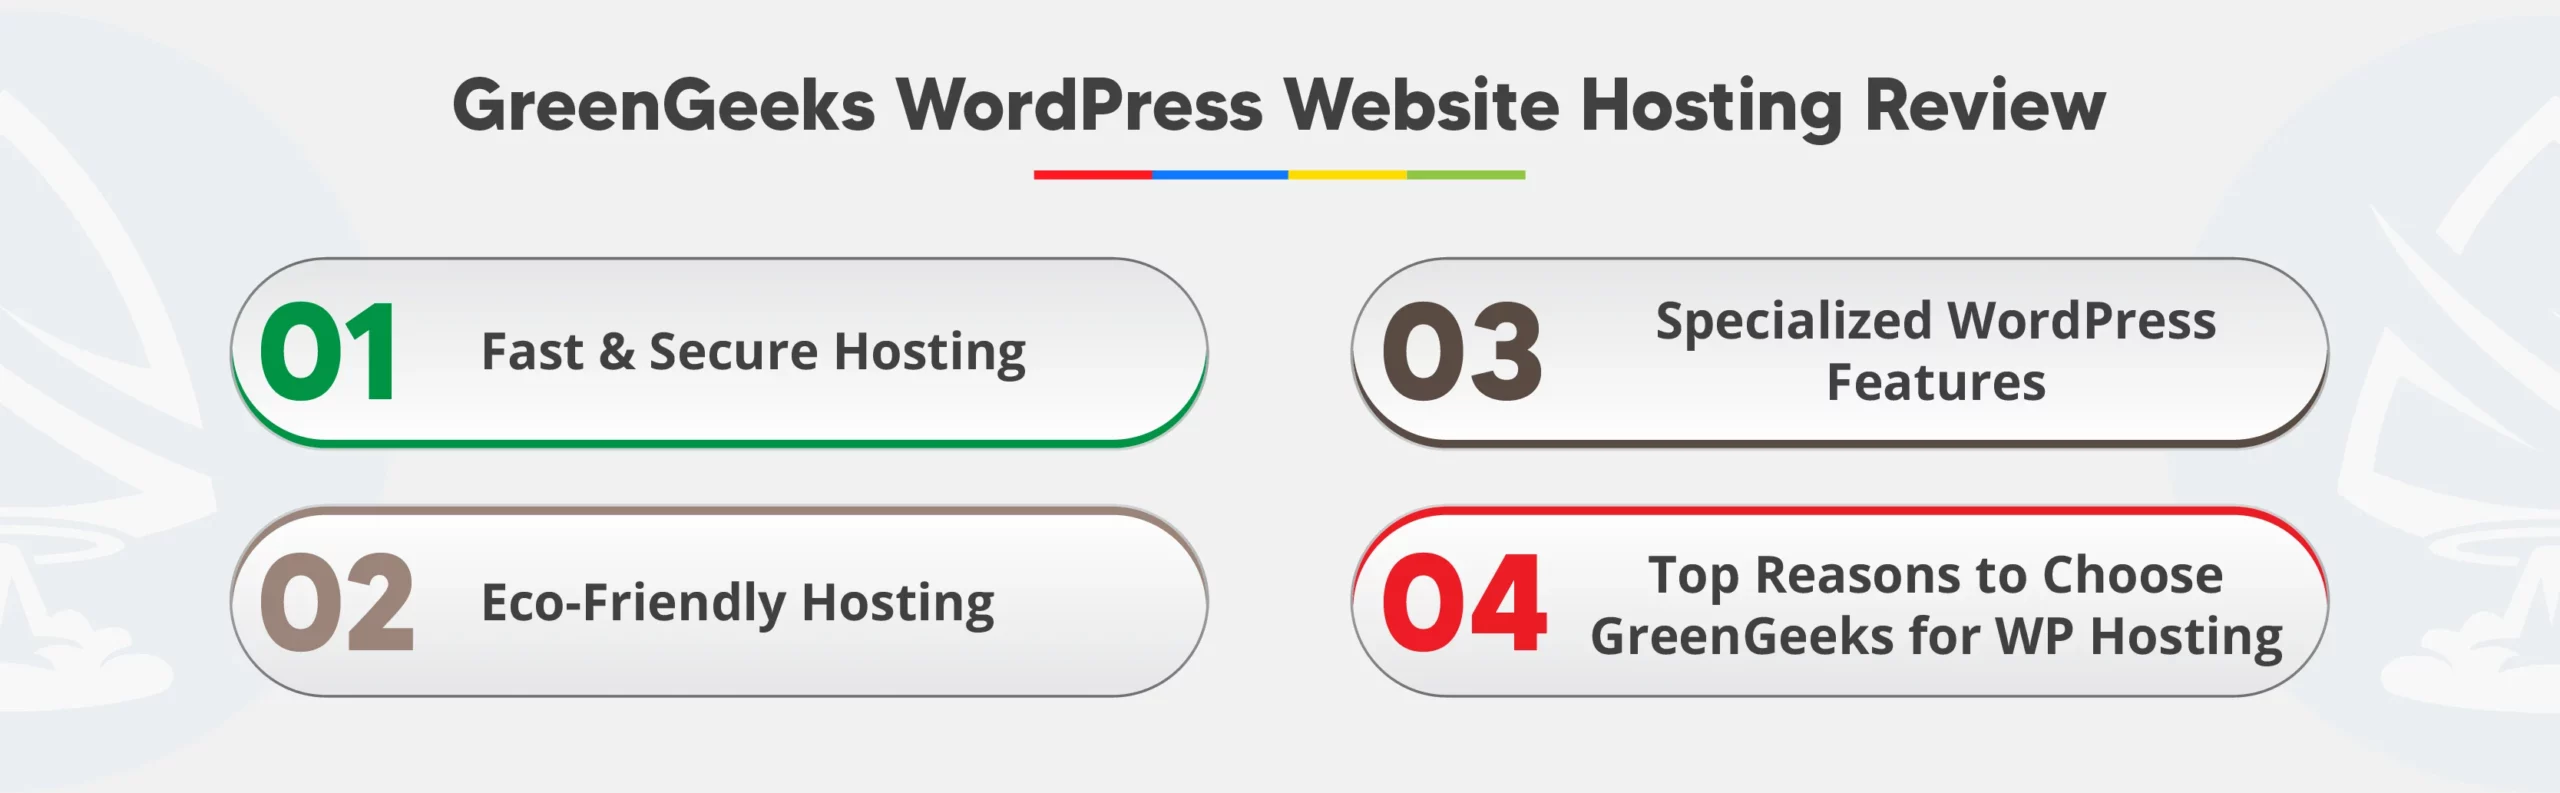 GreenGeeks WordPress Website Hosting Review